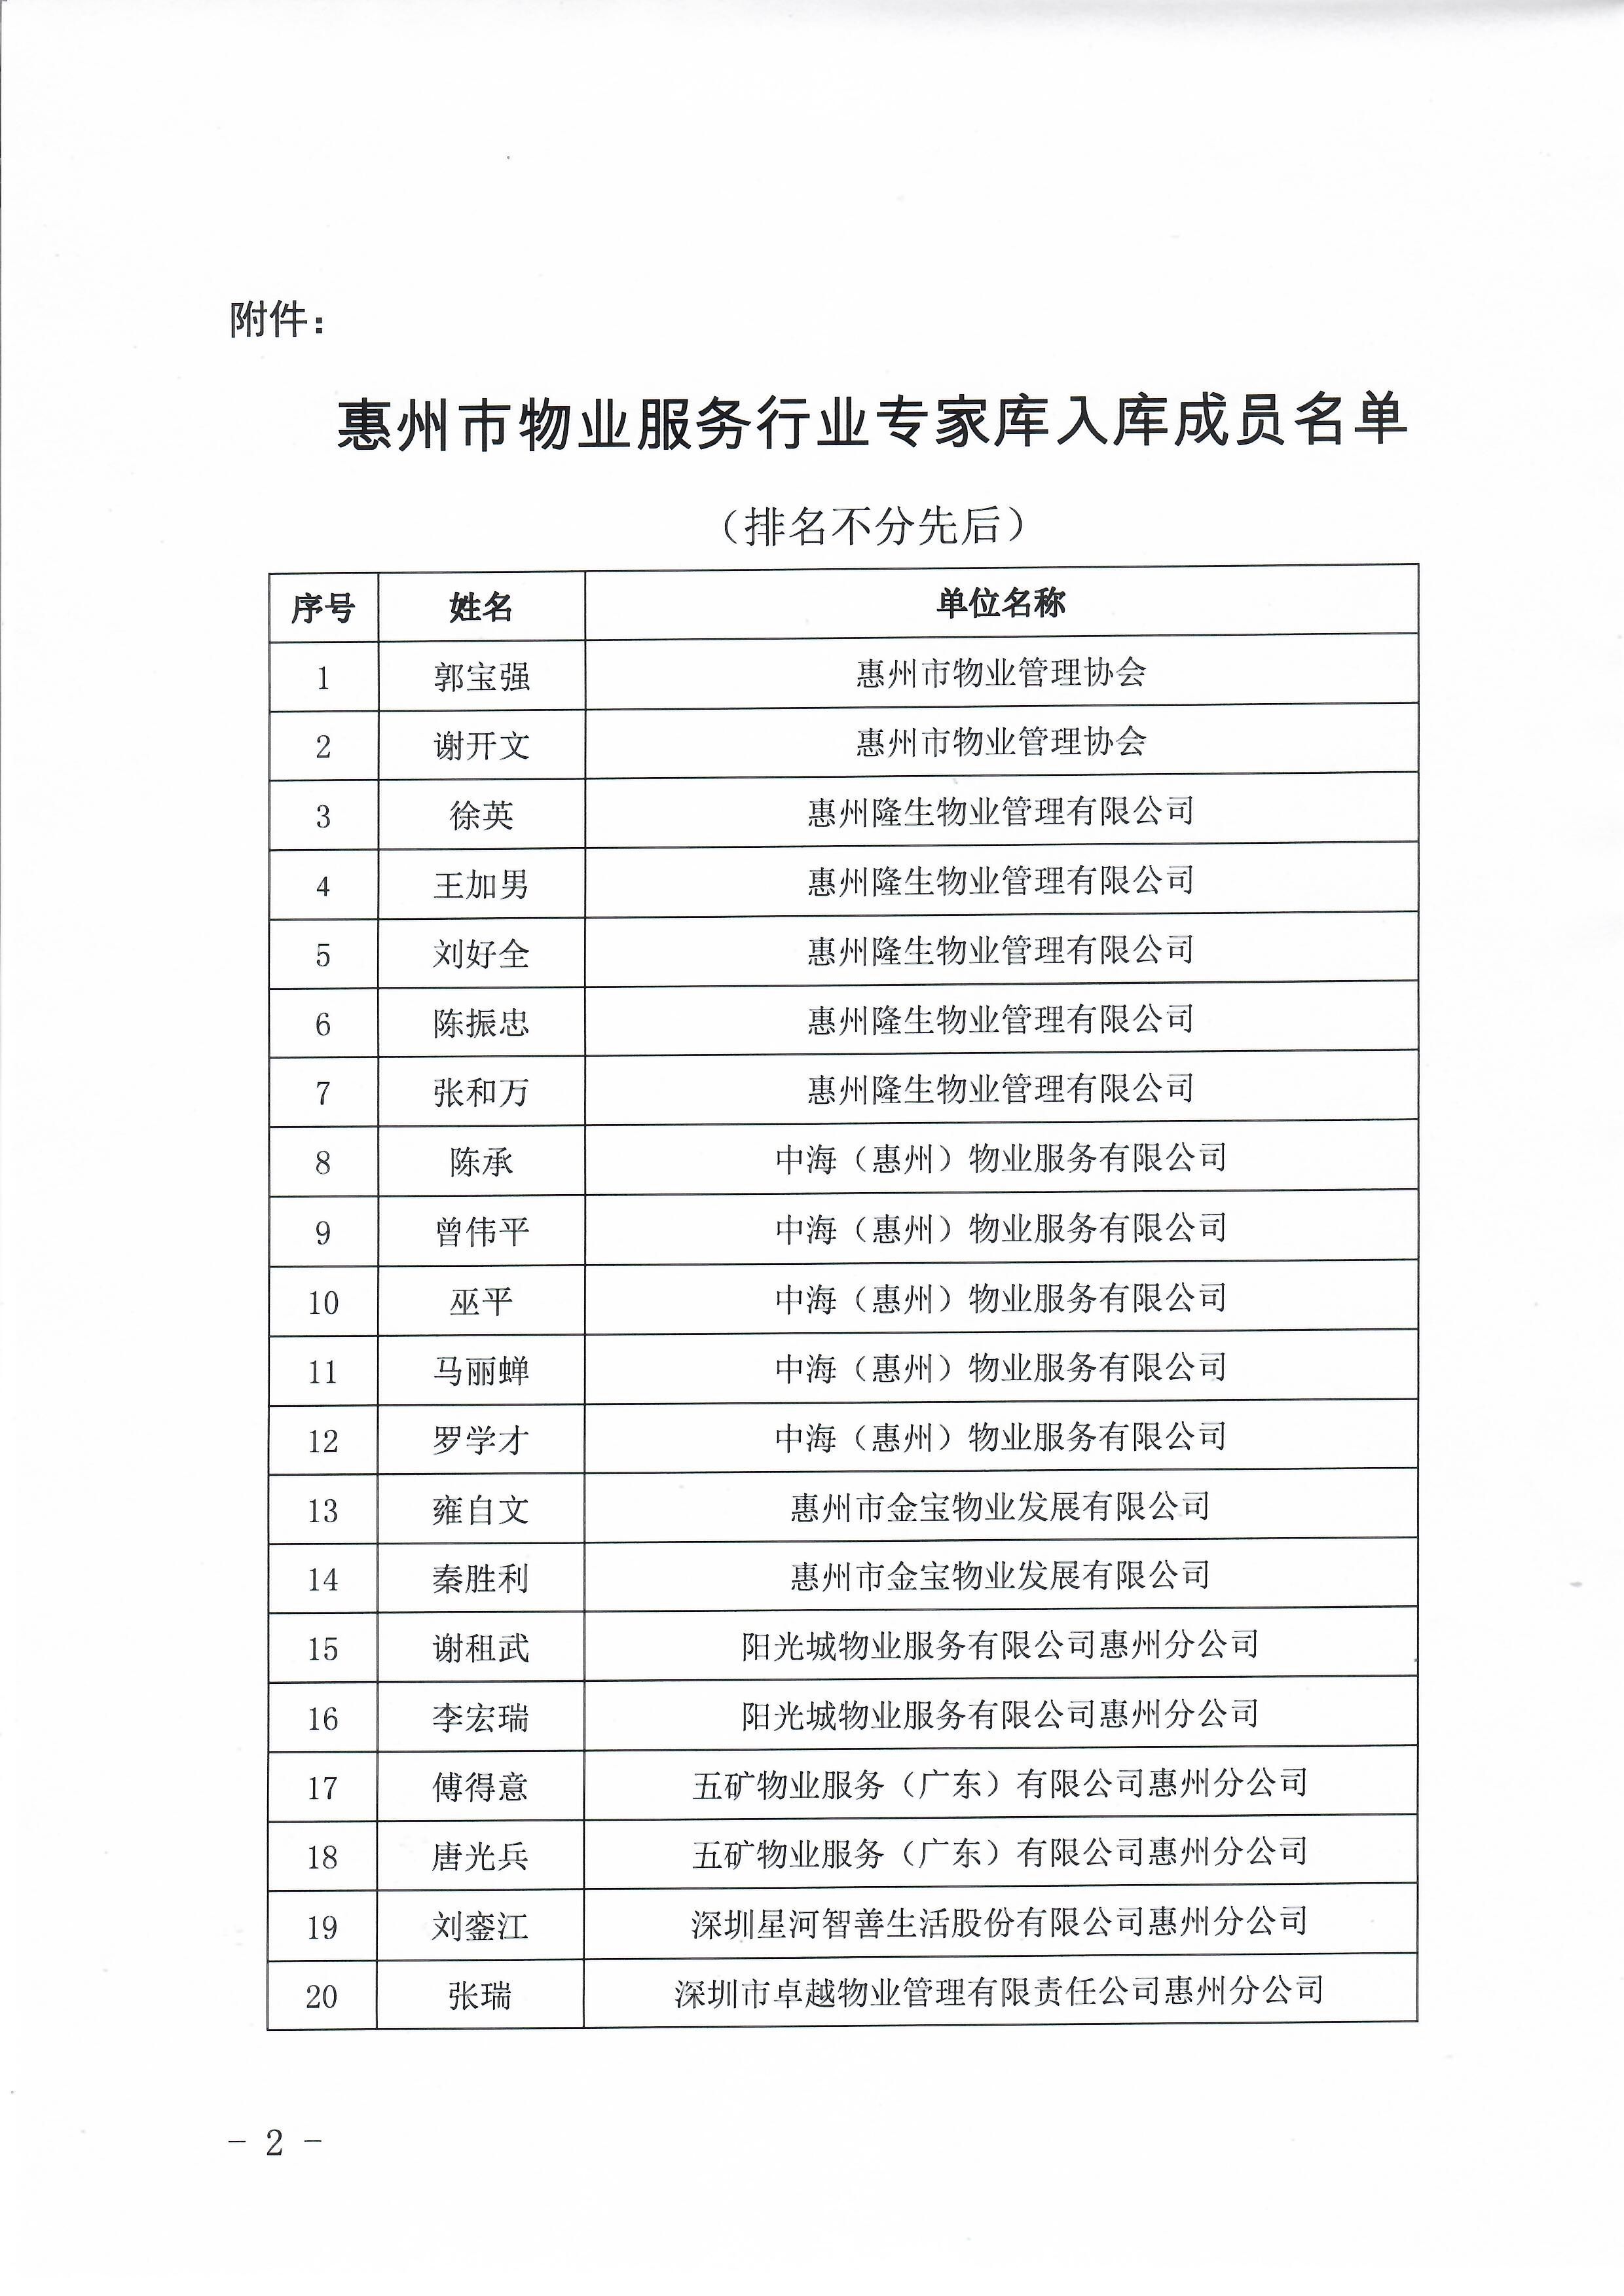 关于惠州市物业服务行业专家库入库成员名单的公告2.jpg